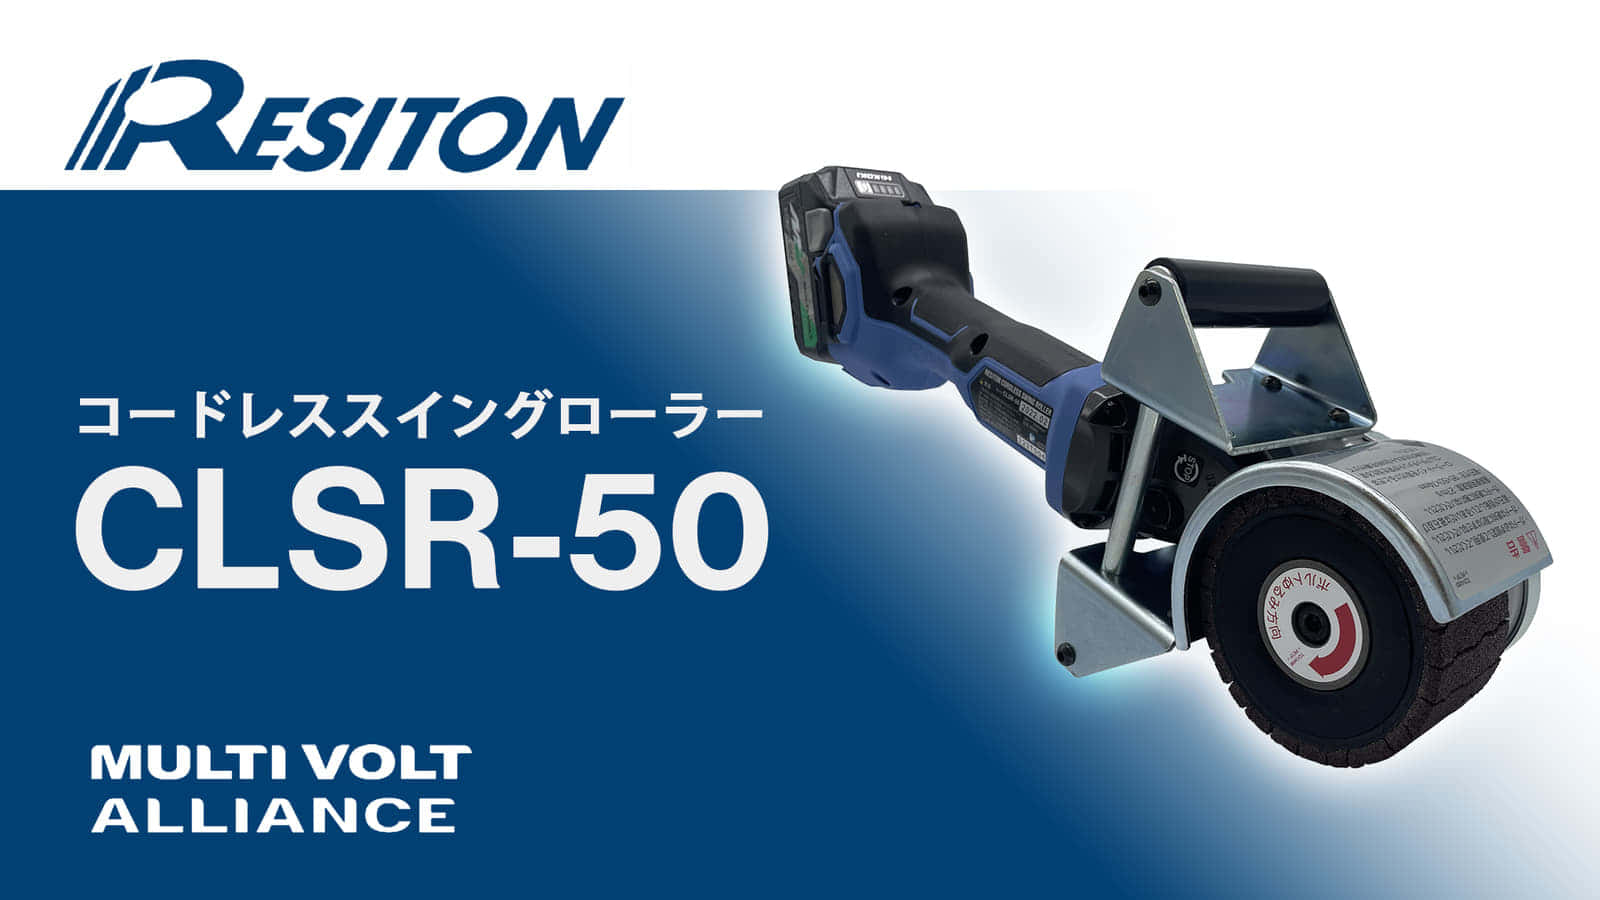 レジトン コードレススイングローラー CLSR-50を発売、マルチボルト対応の幅50mm黒皮剝離機